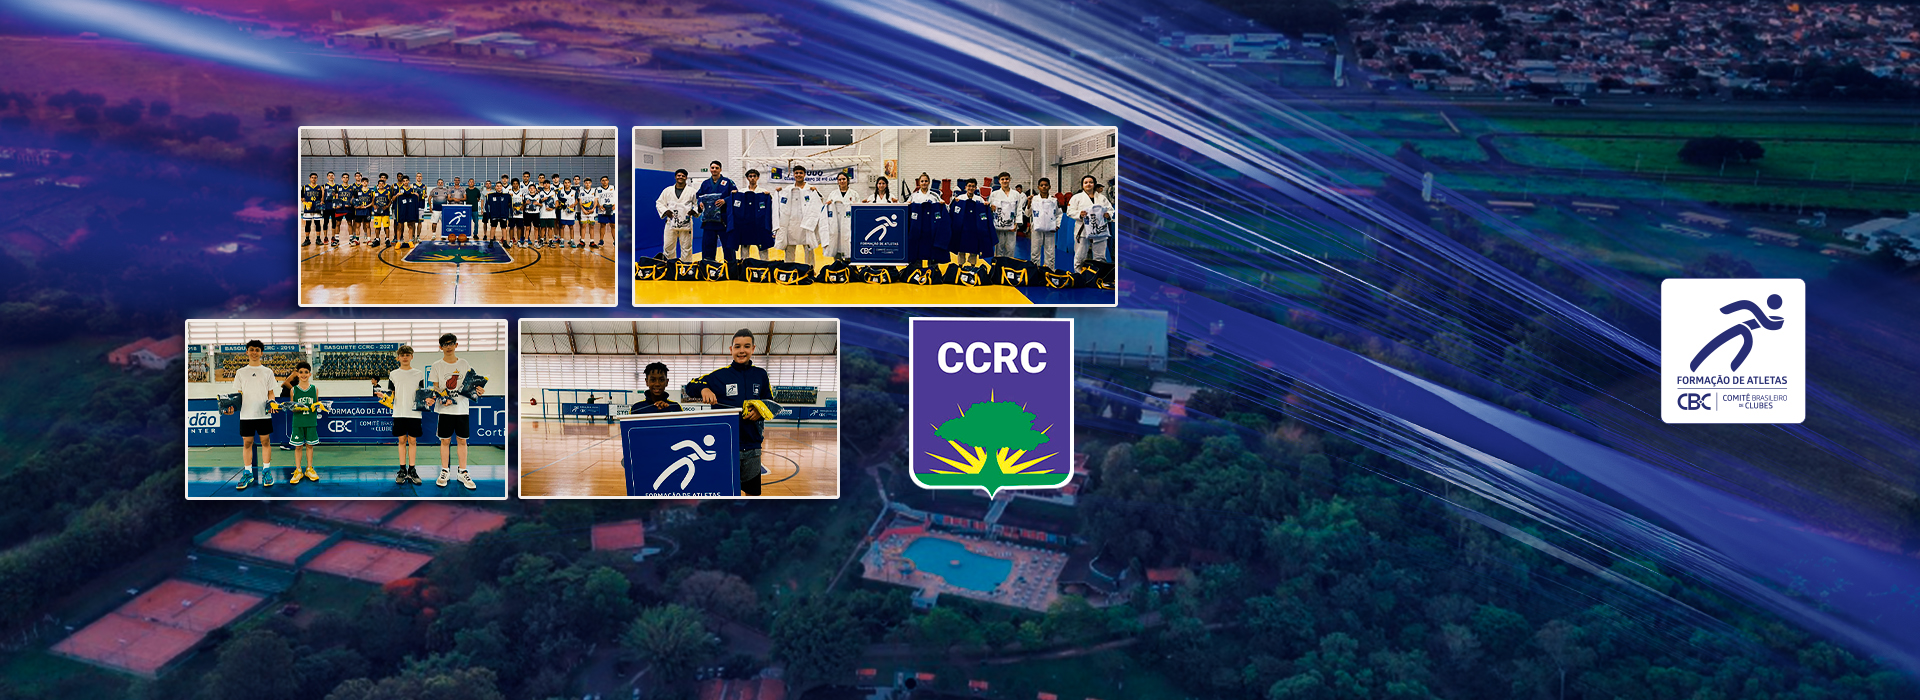 Clube de Campo de Rio Claro – CCRC entrega materiais esportivos aos atletas de Judô e Basquetebol